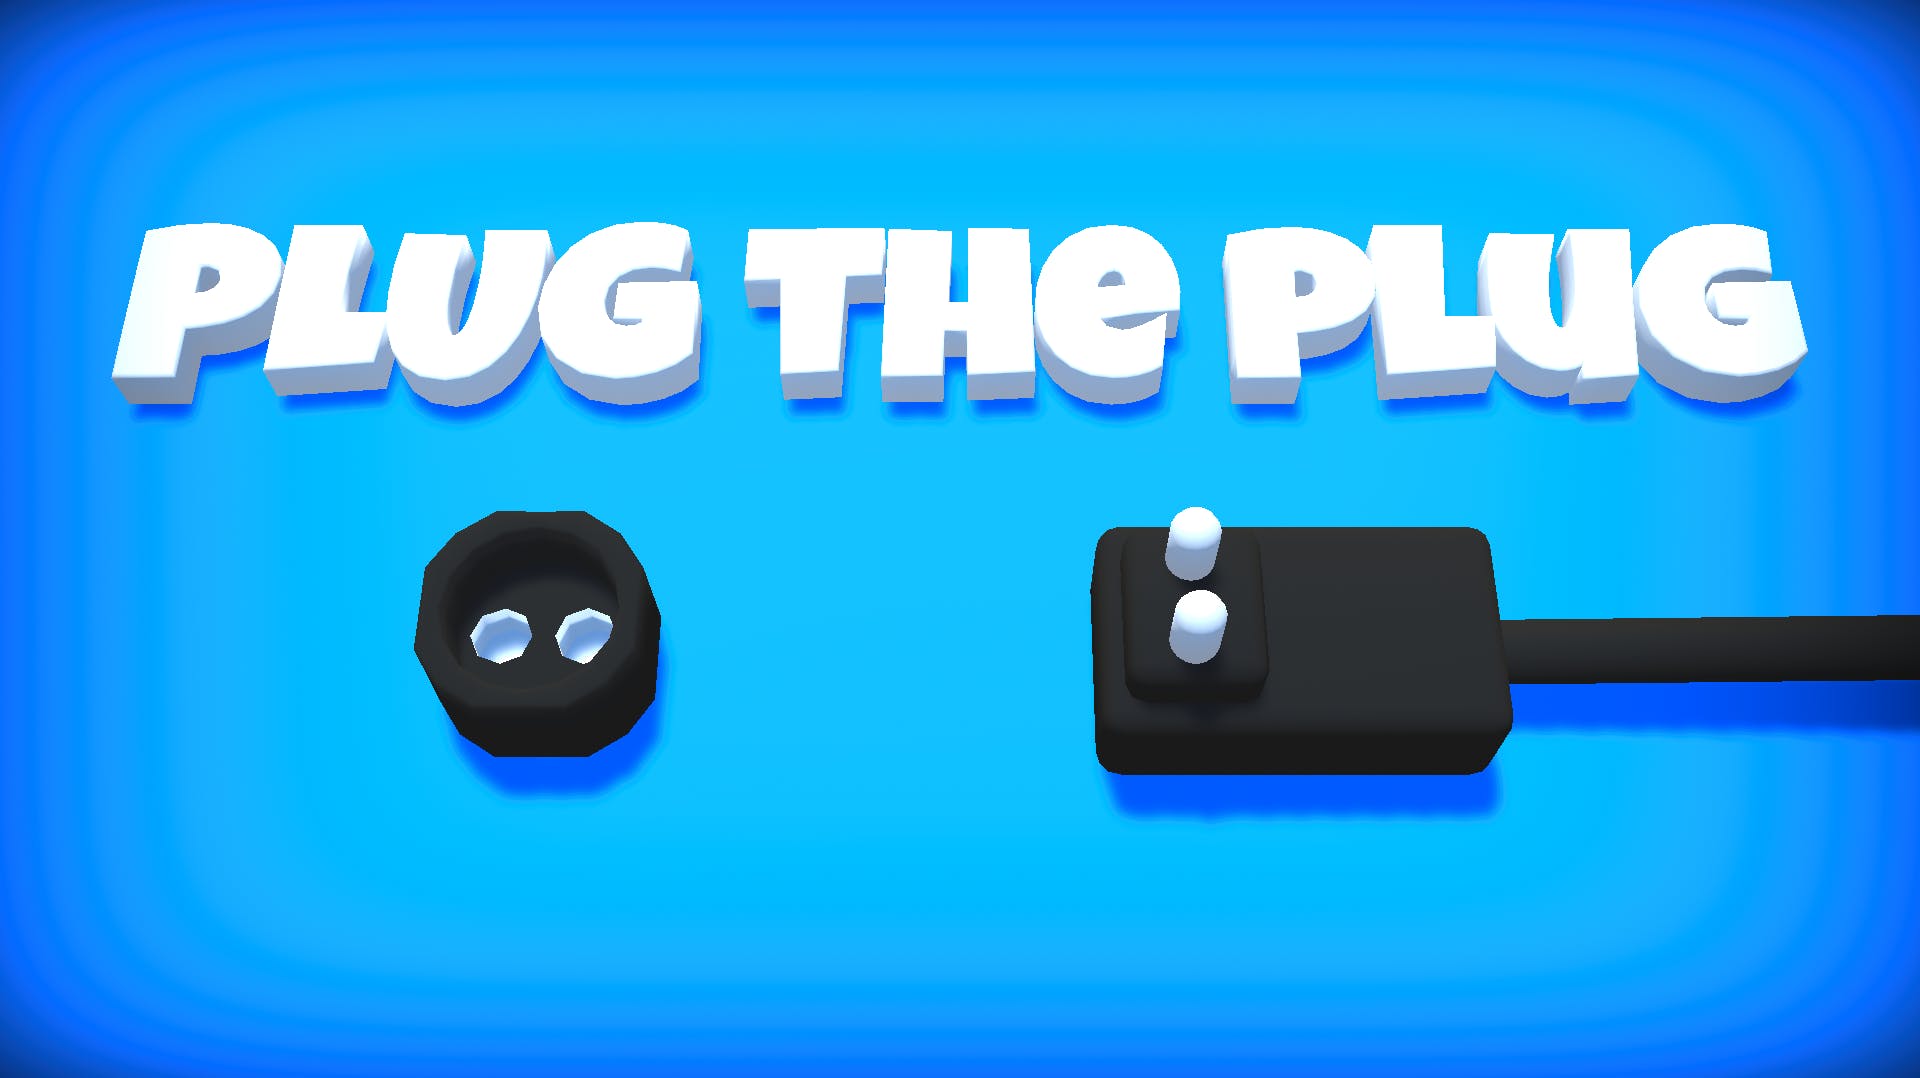 Plug The Plug